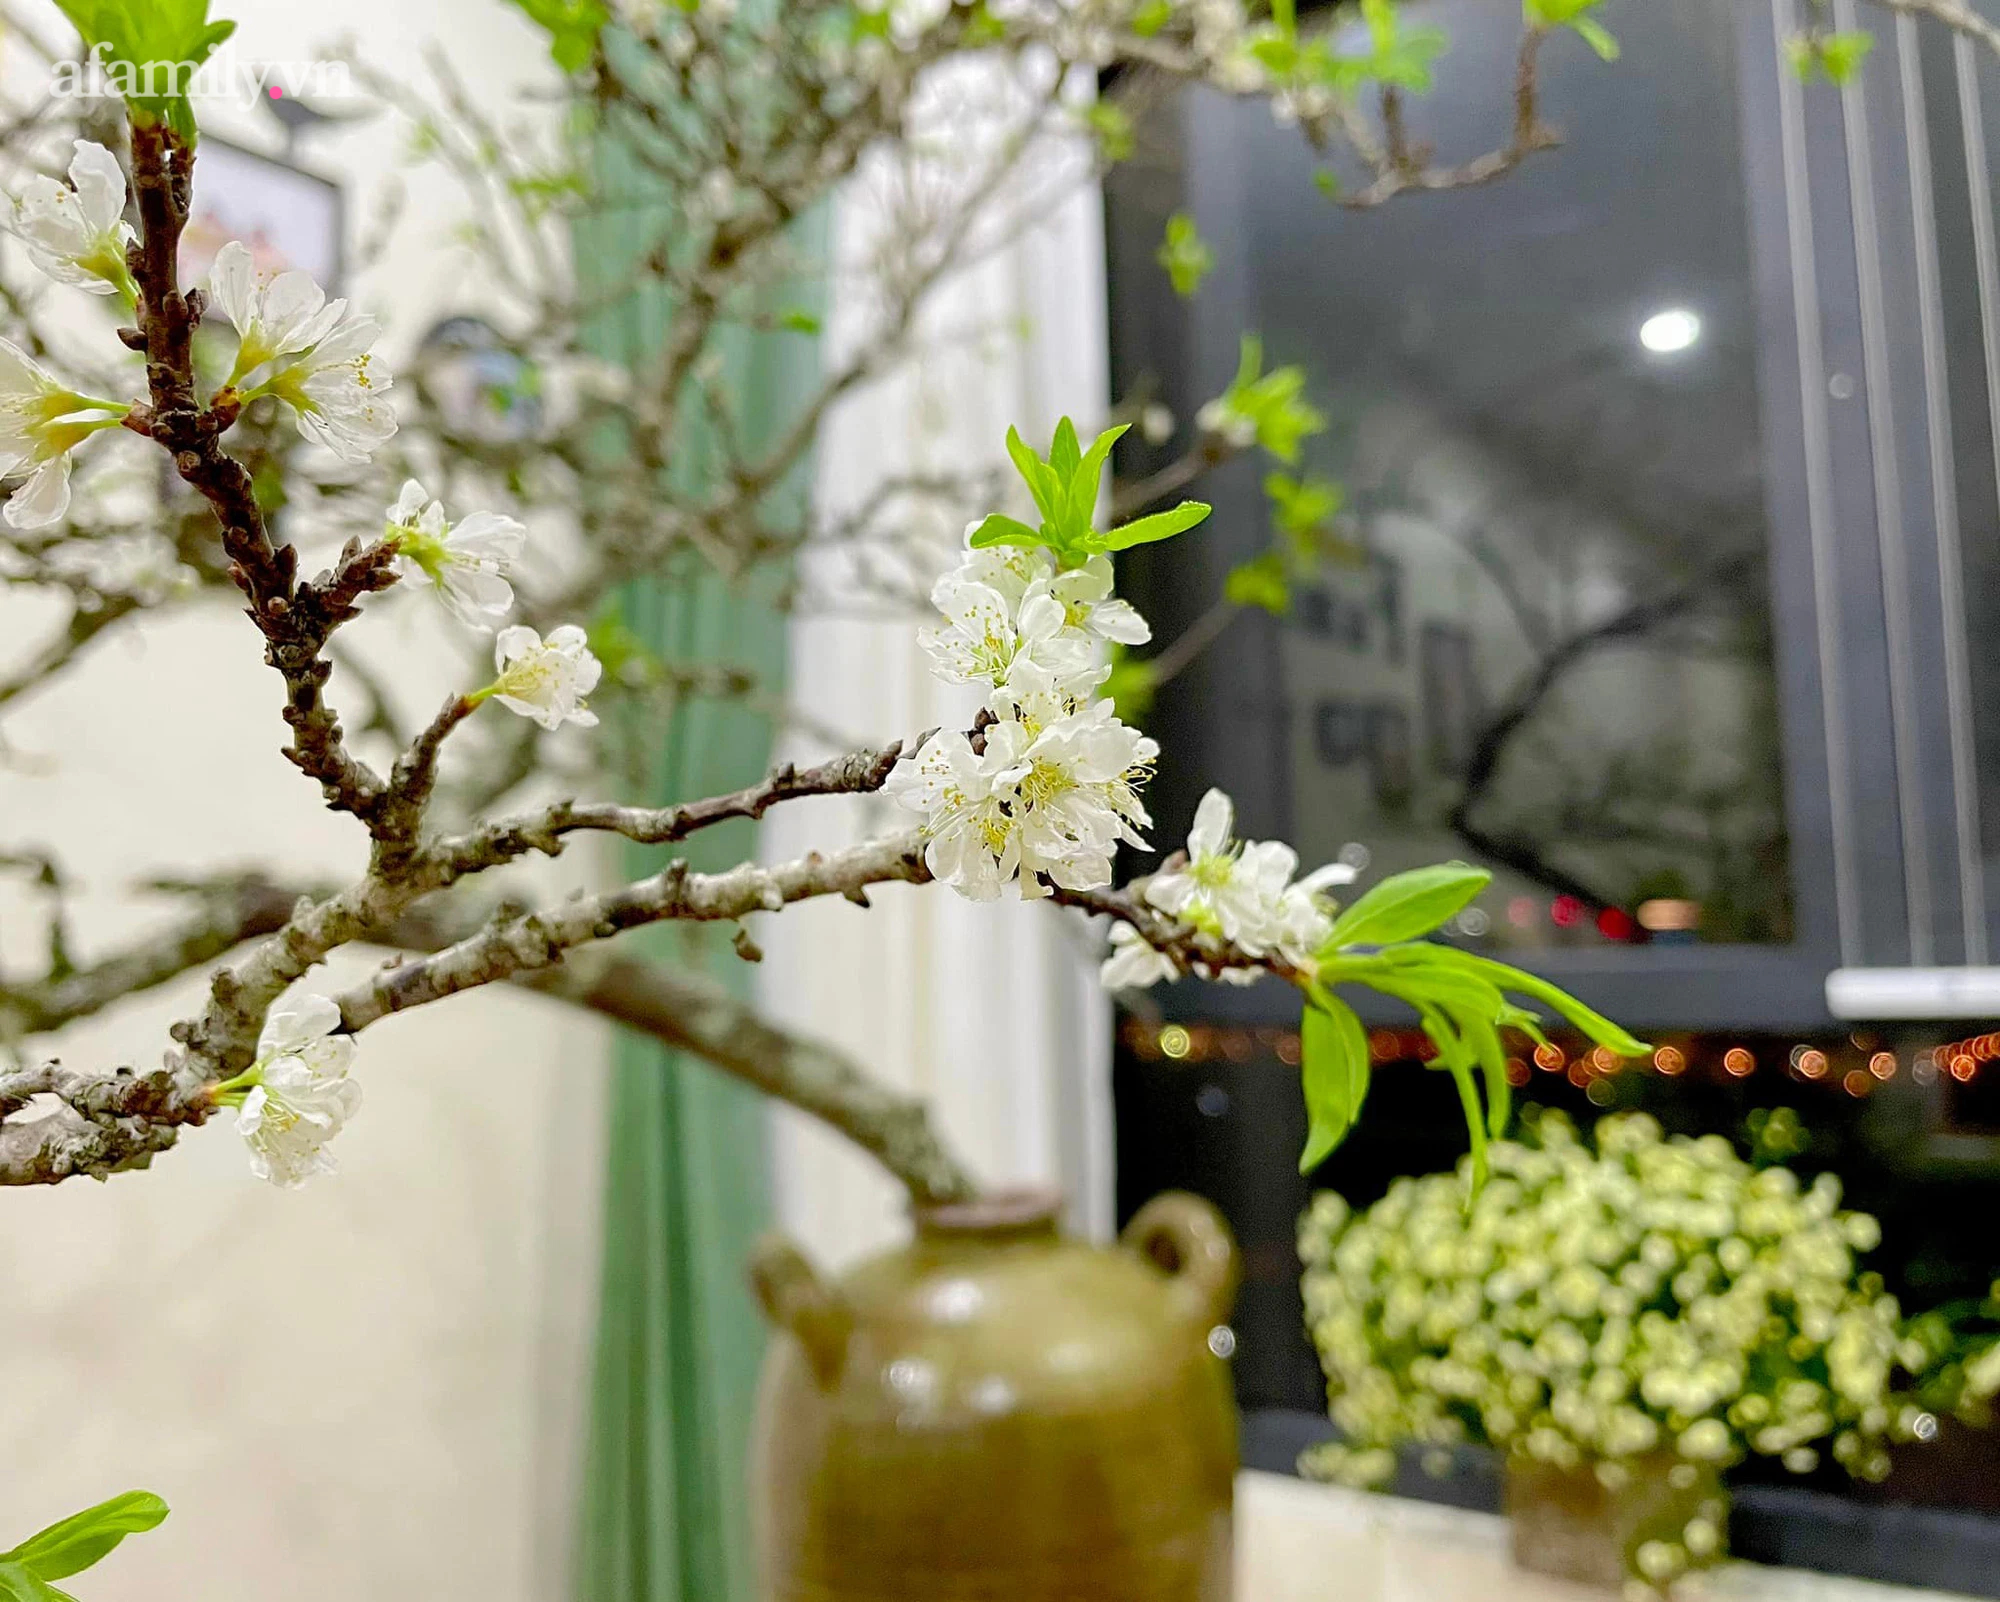 Chị em Hà Thành rộ mốt sắm hoa mận rừng chơi Tết, mỗi cành giá nửa triệu mang vẻ đẹp núi rừng sơn cước vào nhà - Ảnh 7.